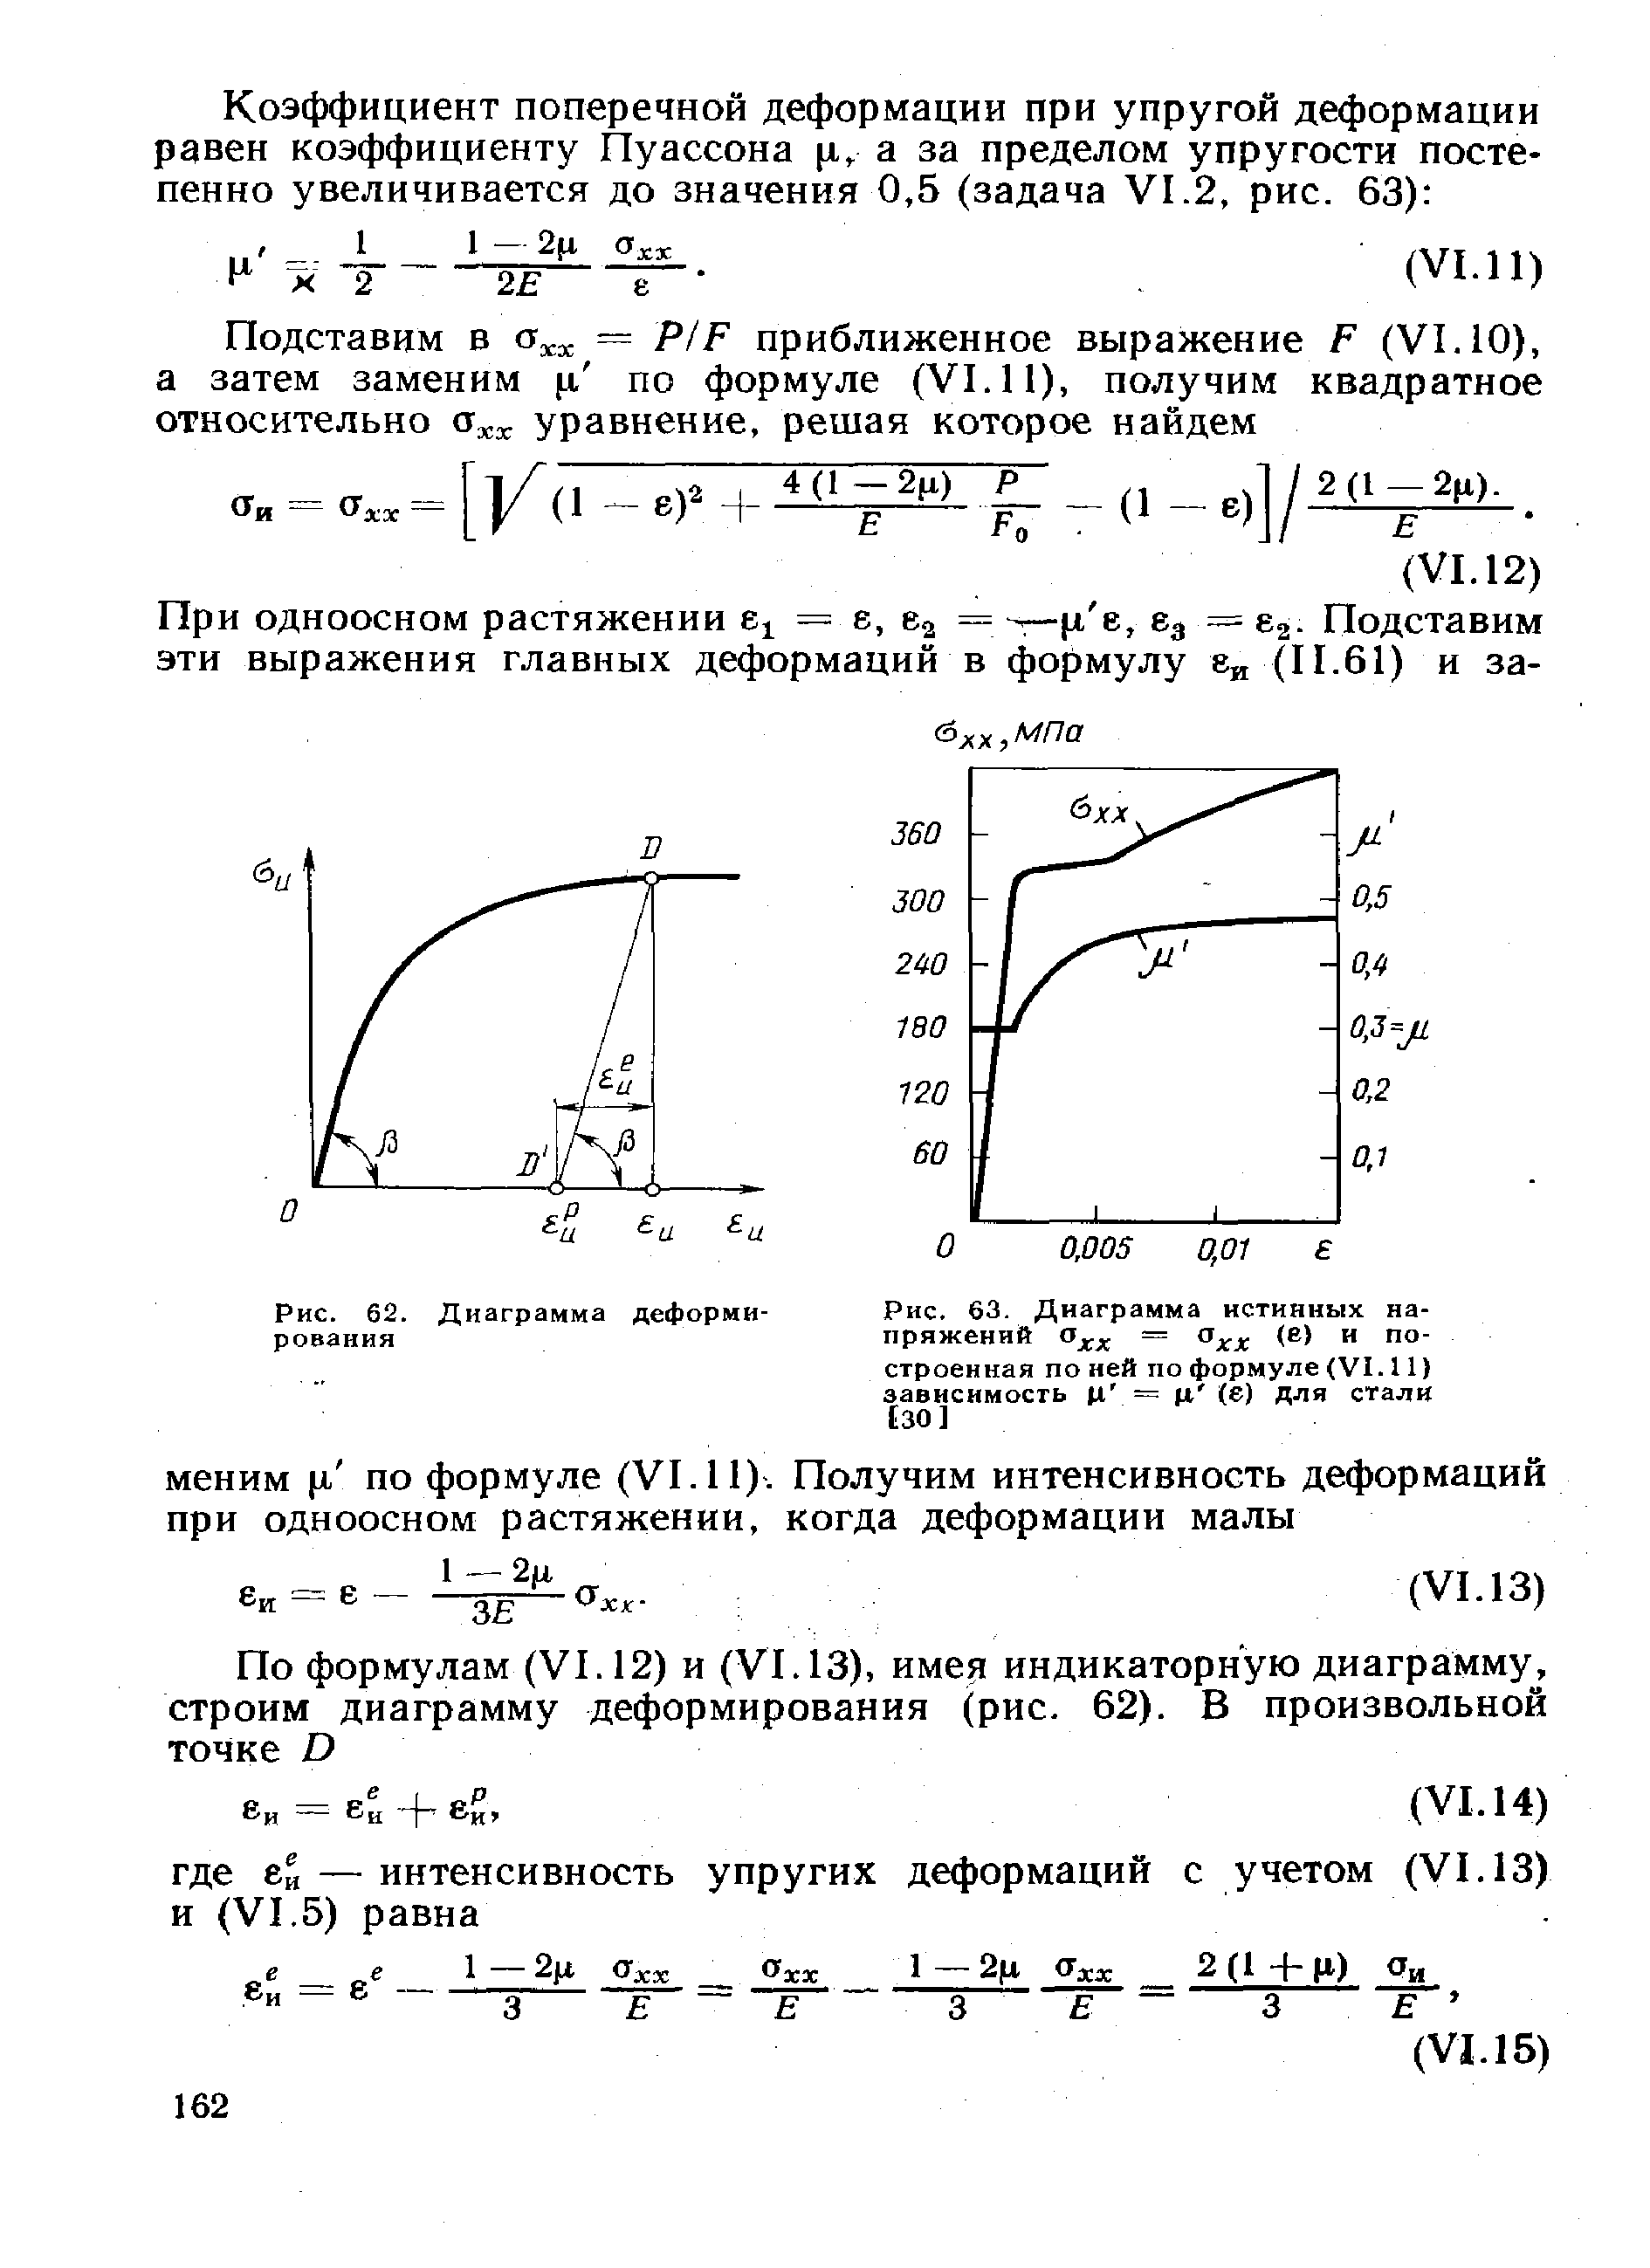 Рис. 63. Диаграмма истинных напряжений Ojpj, = (е) и построенная по ней по формуле (VI. 11) зависимость и = И W Для стали [30]
